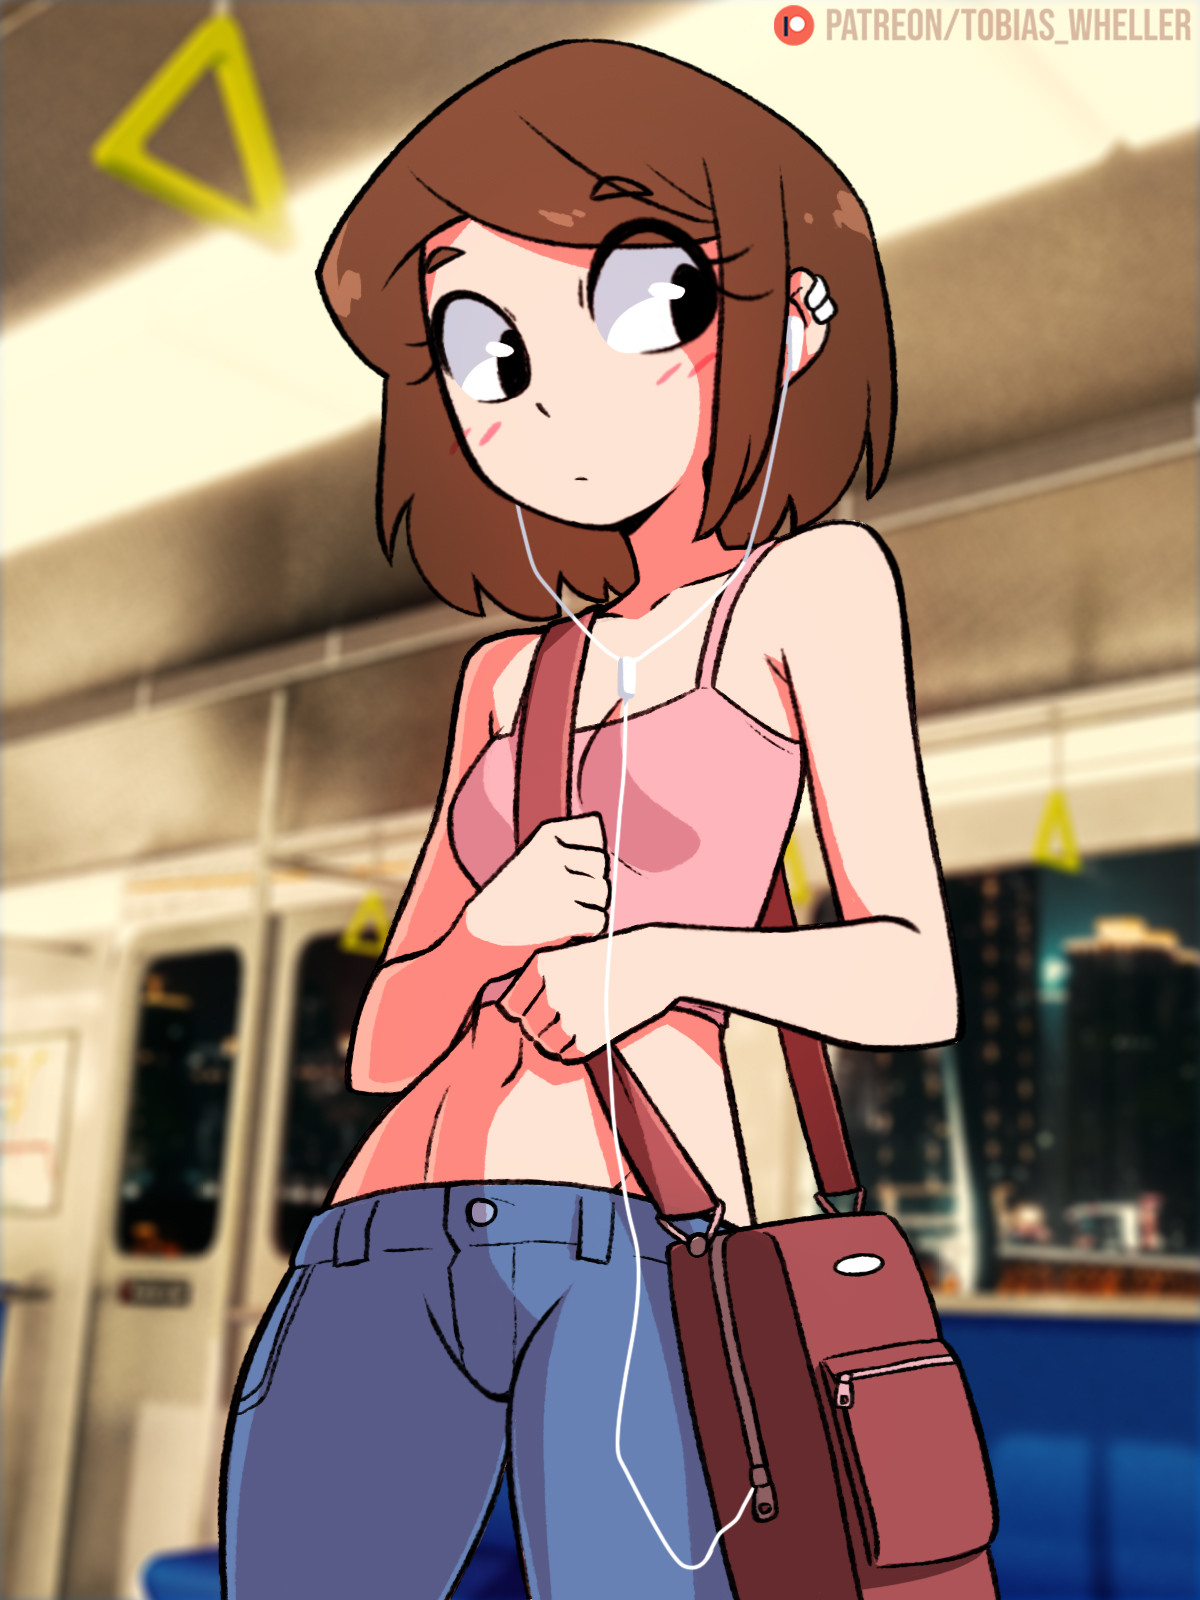 That random girl on the train插画图片壁纸